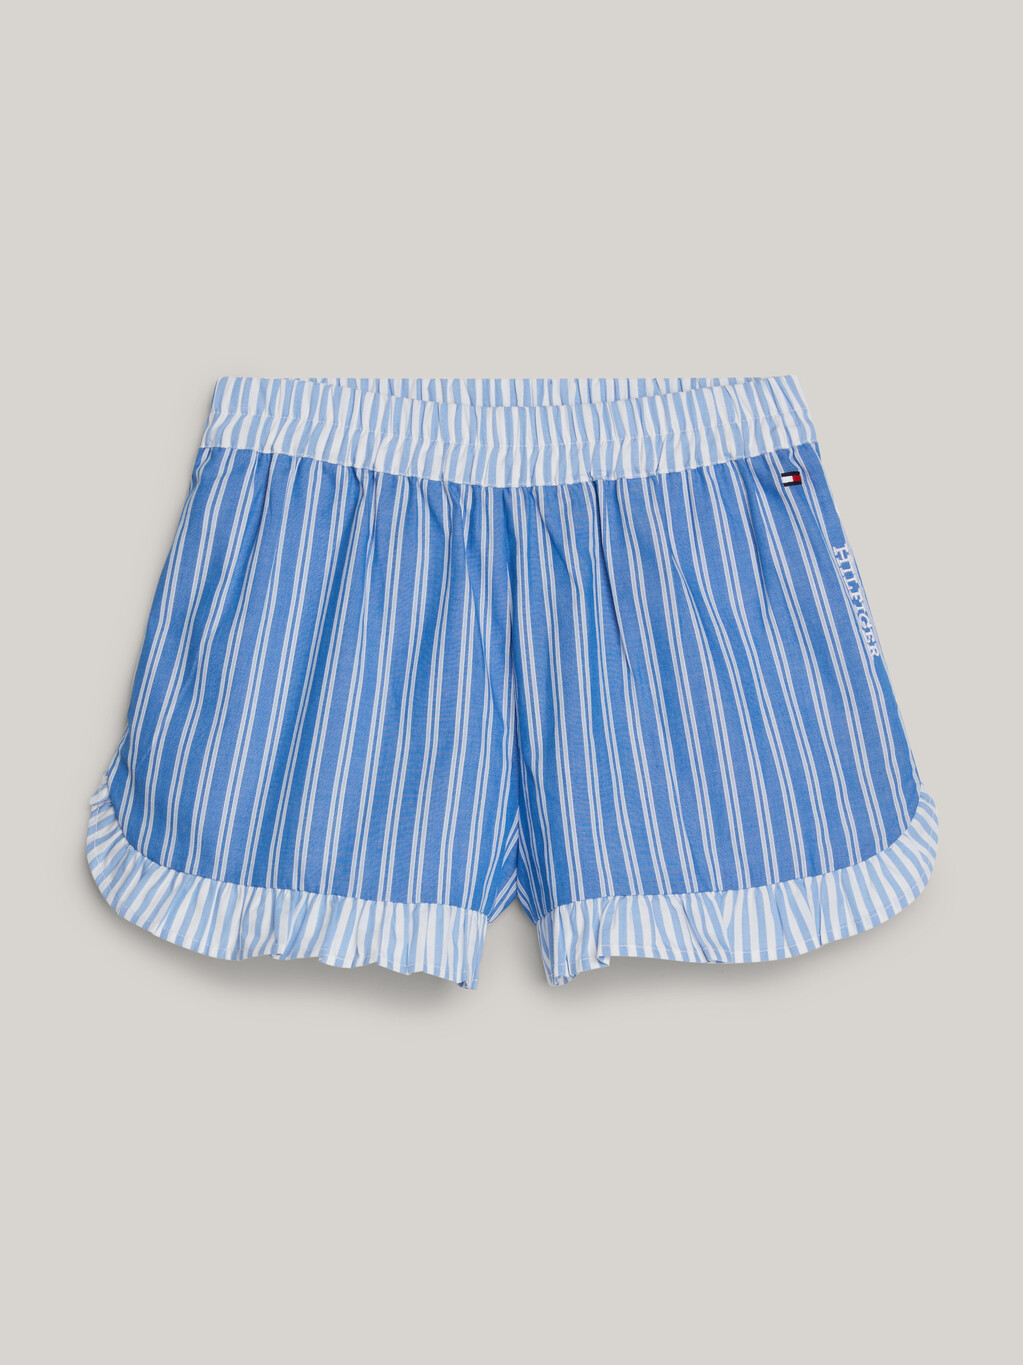 條紋荷葉邊休閒短褲, Blue Spell Stripe / White, hi-res